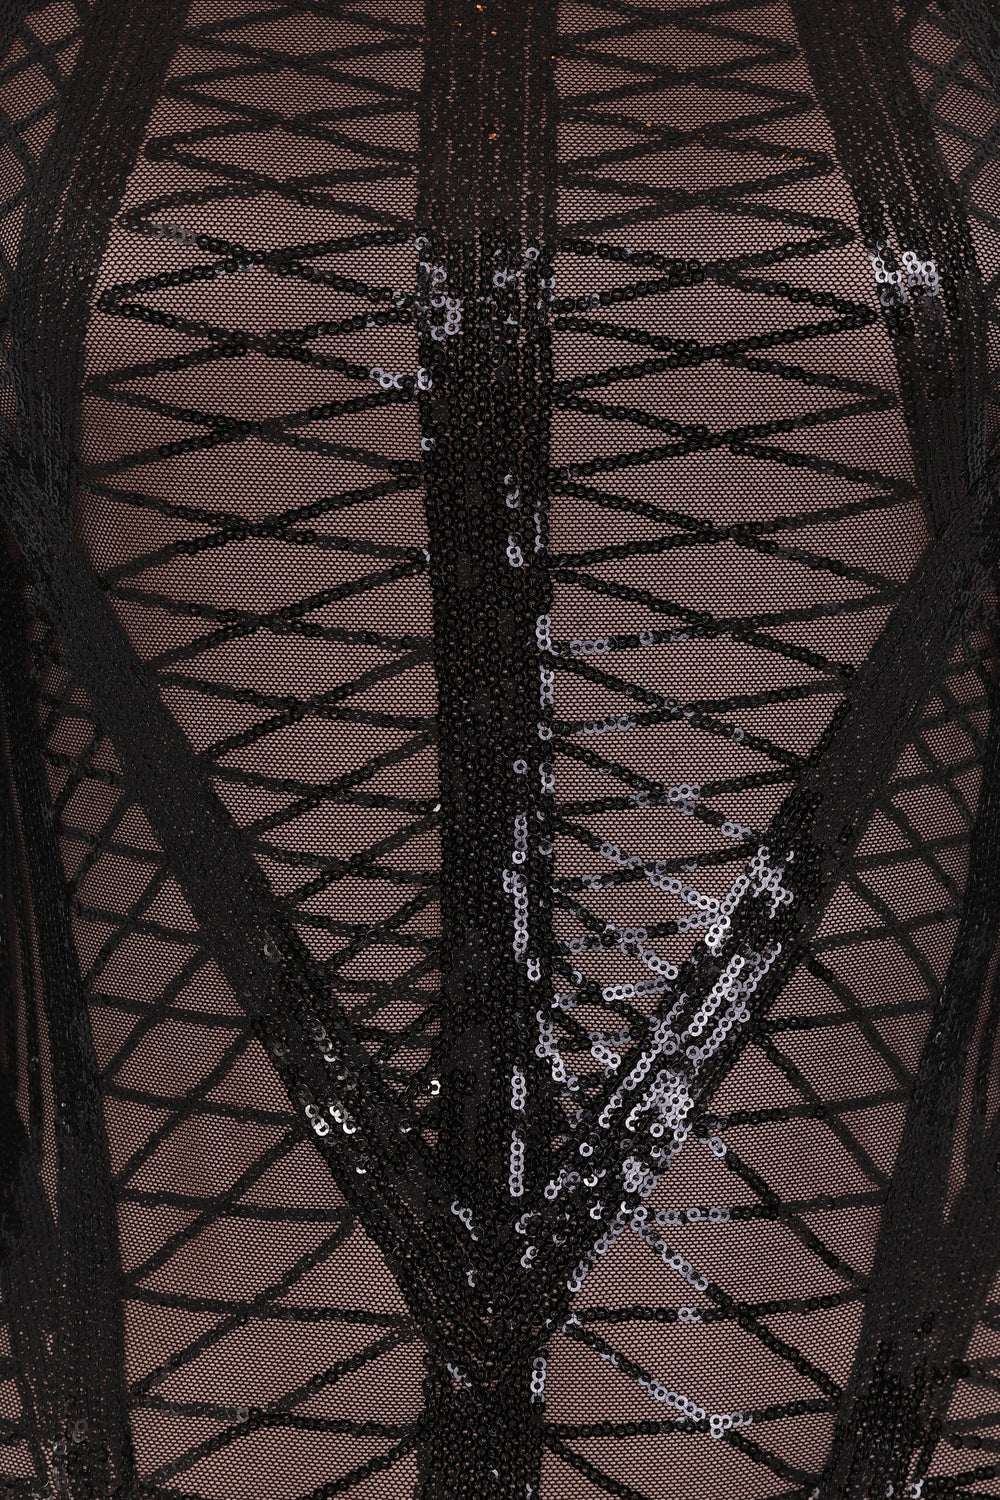 Hilton Luxe Black Dark Nude Cage Sequin Bandage Bodycon Illusion Dress